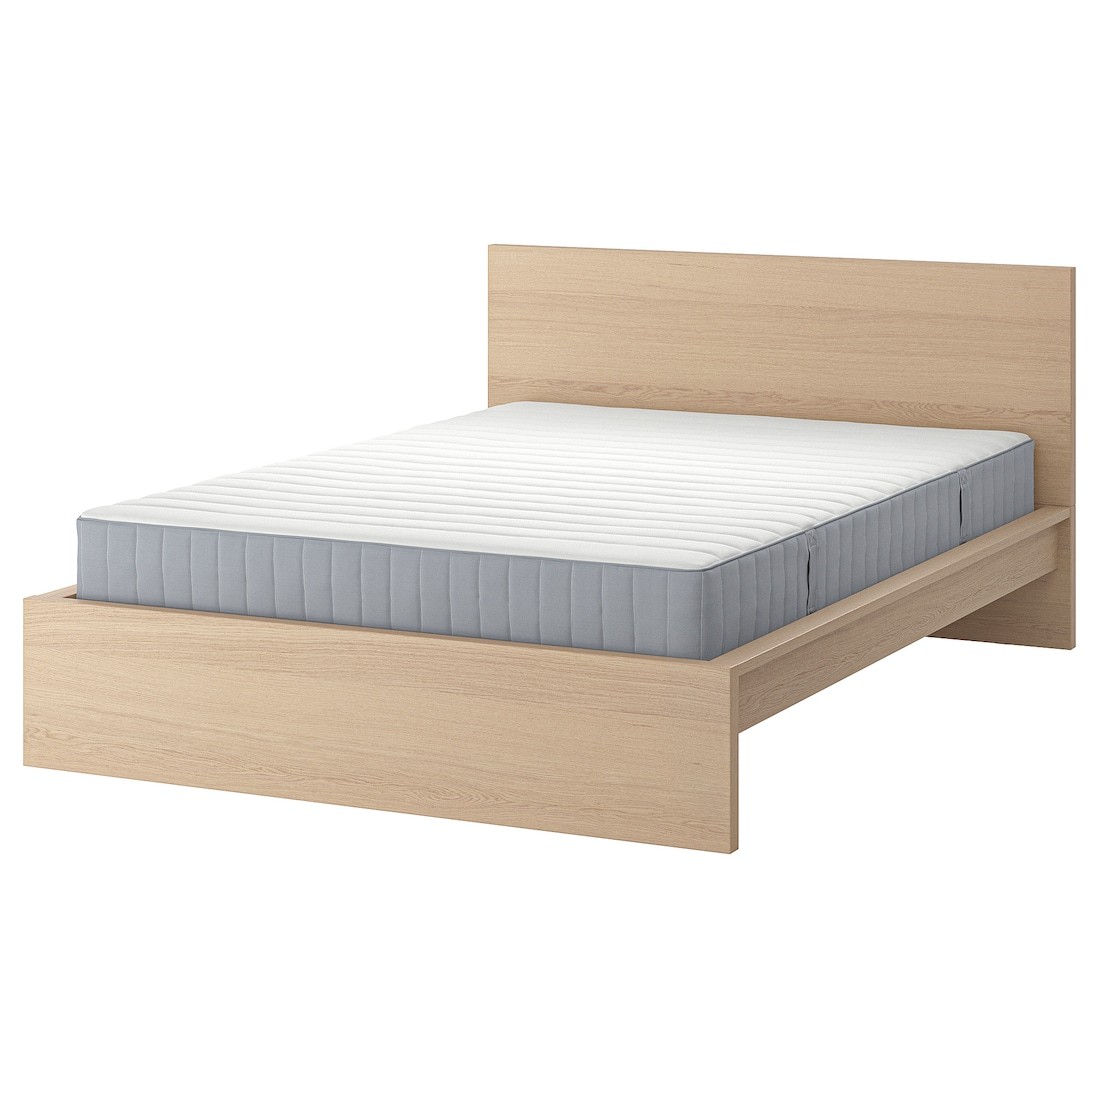 MALM Кровать с матрасом, дубовый шпон беленый / Valevåg жесткий, 180x200 см